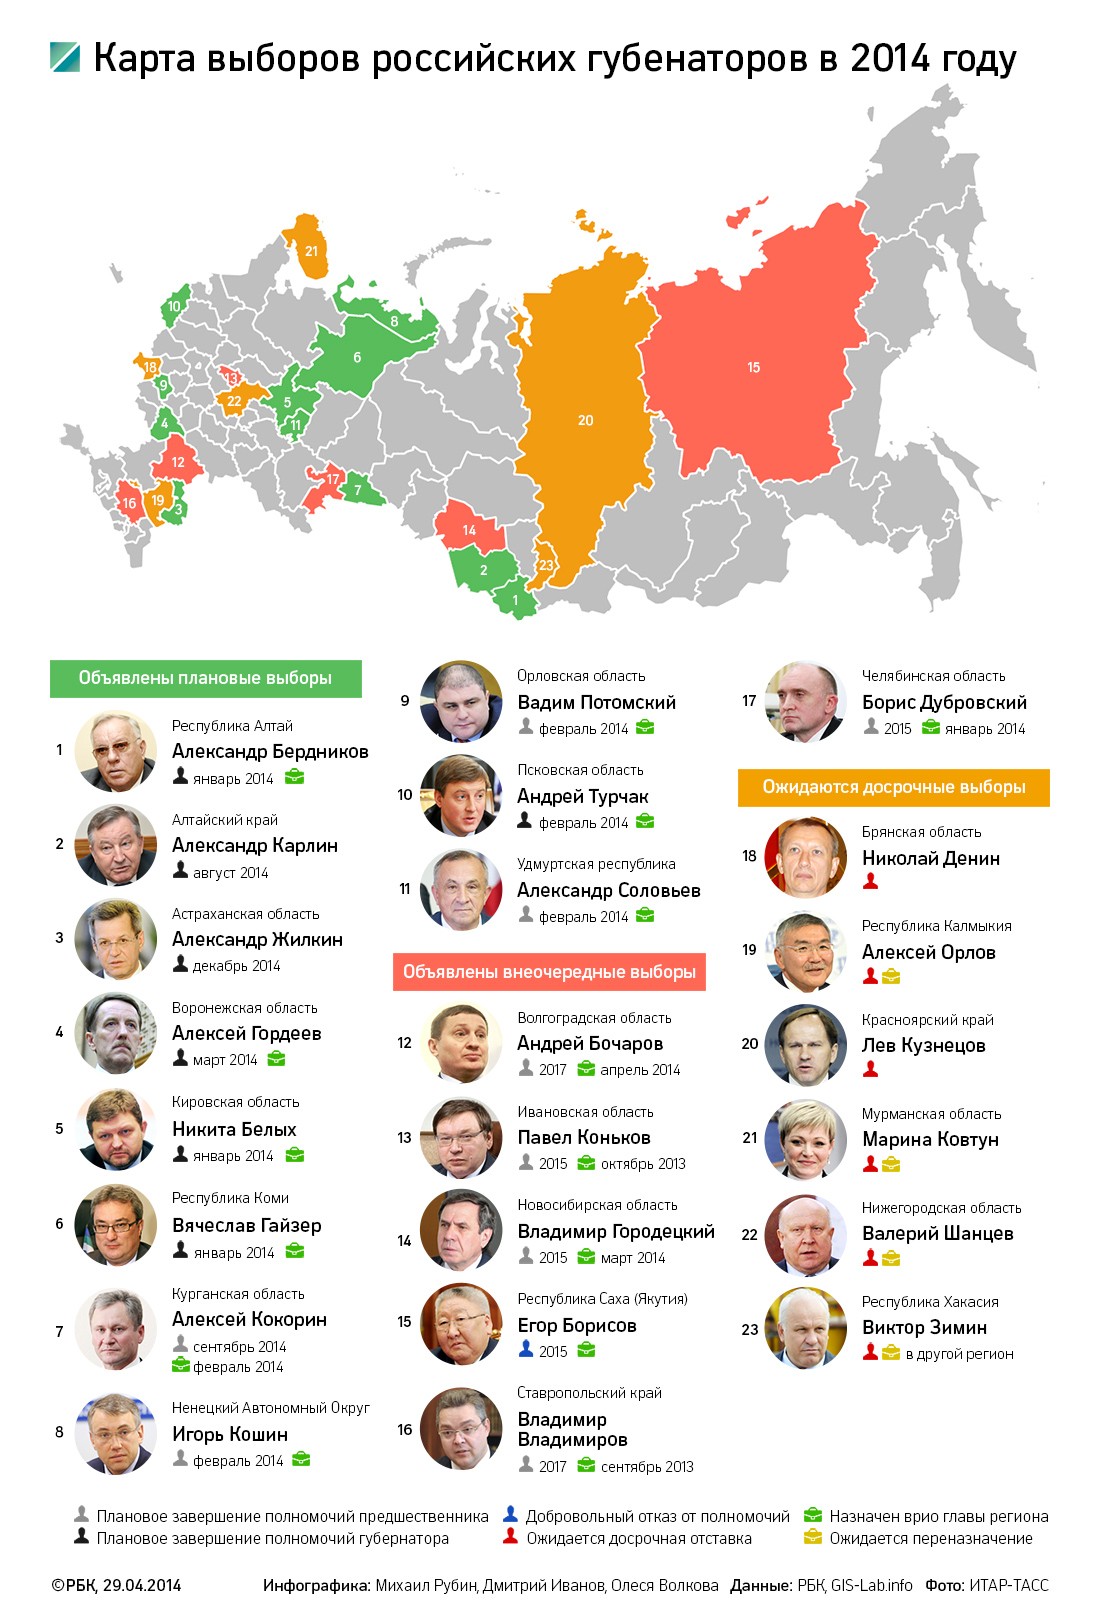 Путин отправил мурманского губернатора на досрочные выборы